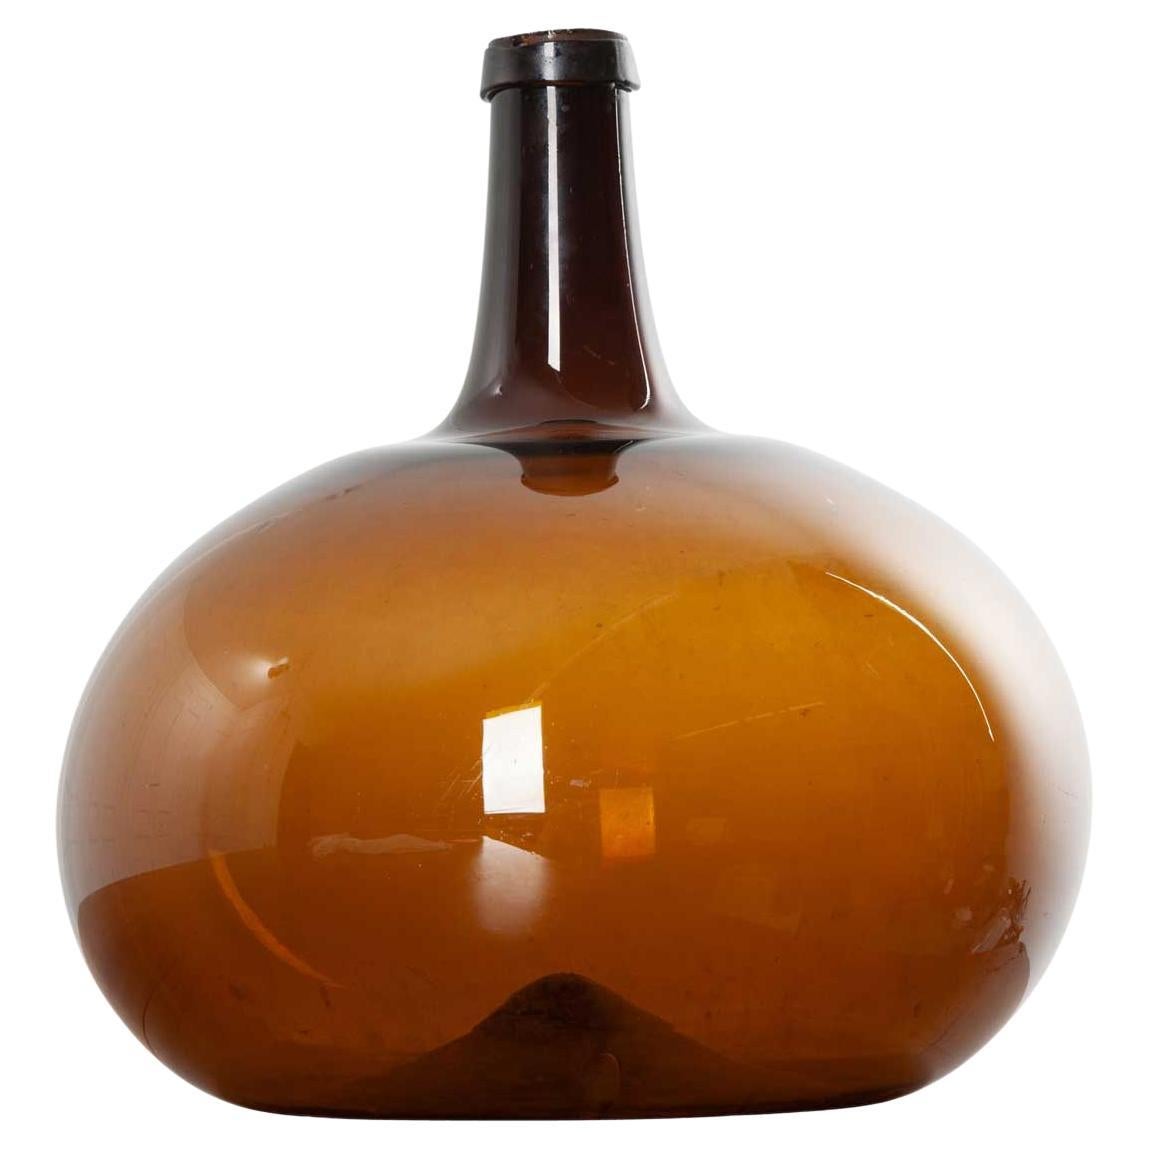 Pichet à vin en verre ambré du 18ème siècle français